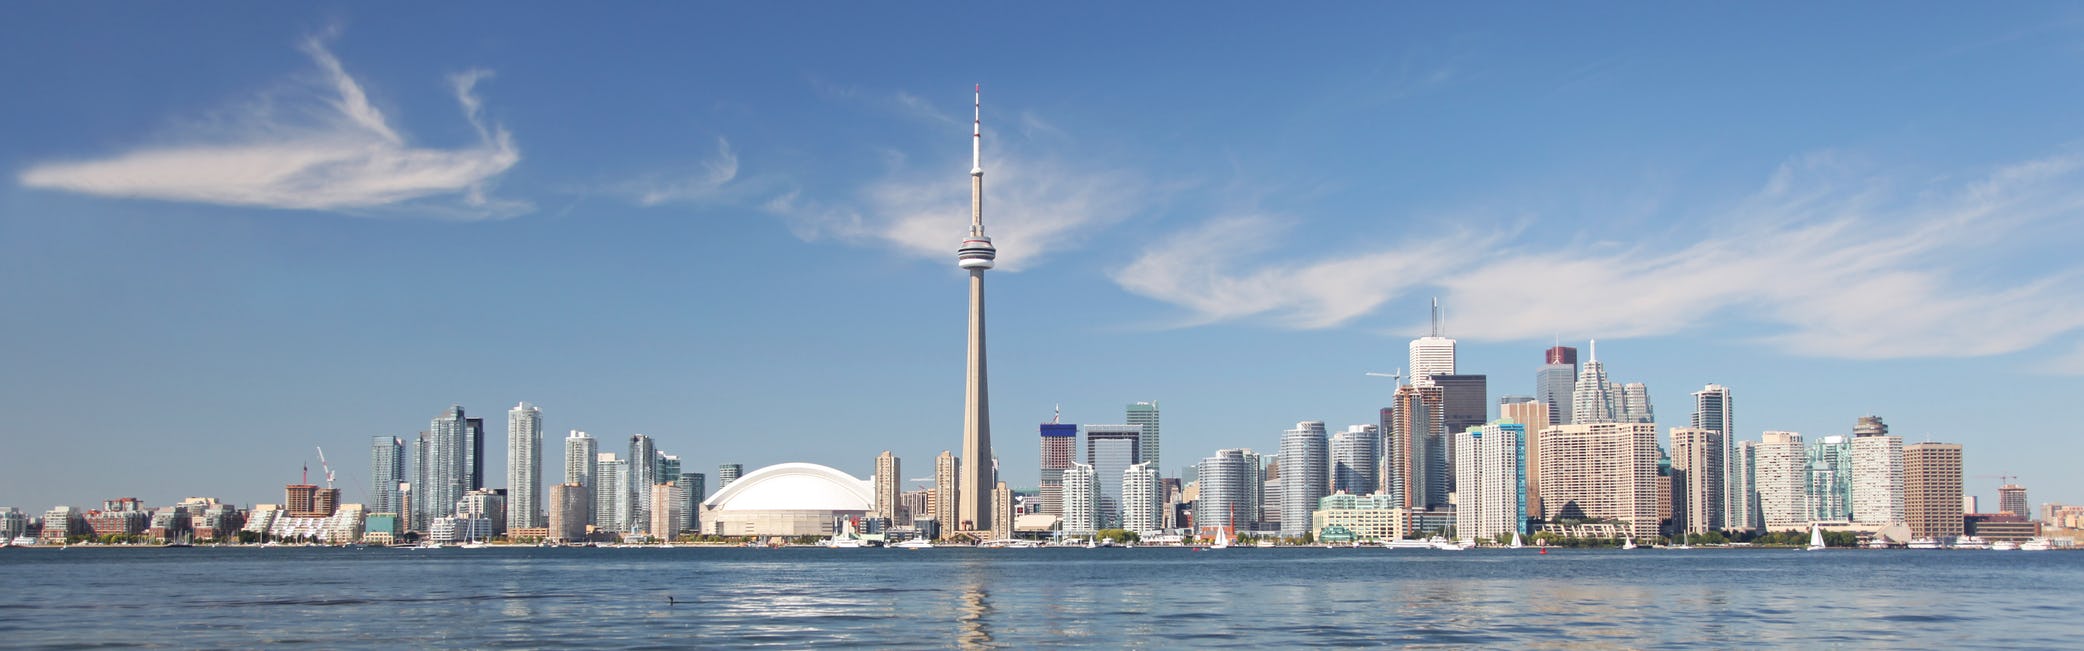 Beautiful Toronto Waterfront Cityscape